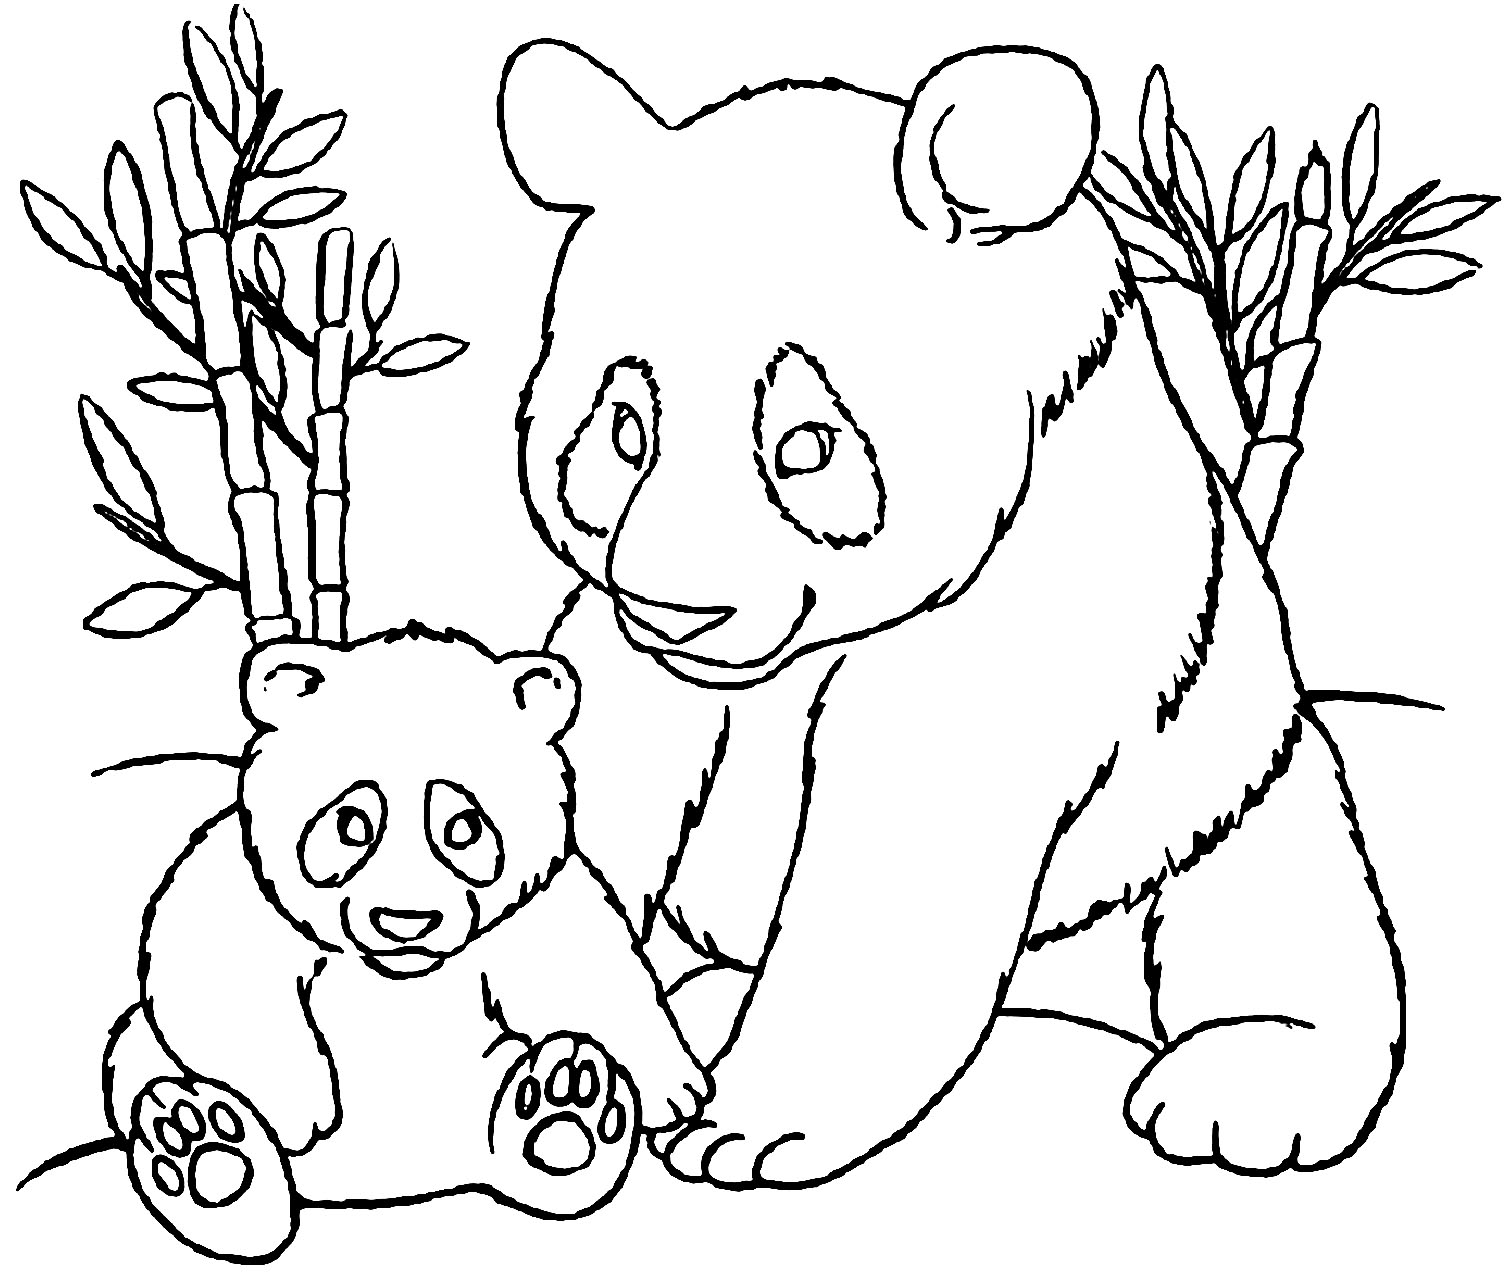 Dibujo de panda fácil de colorear para niños